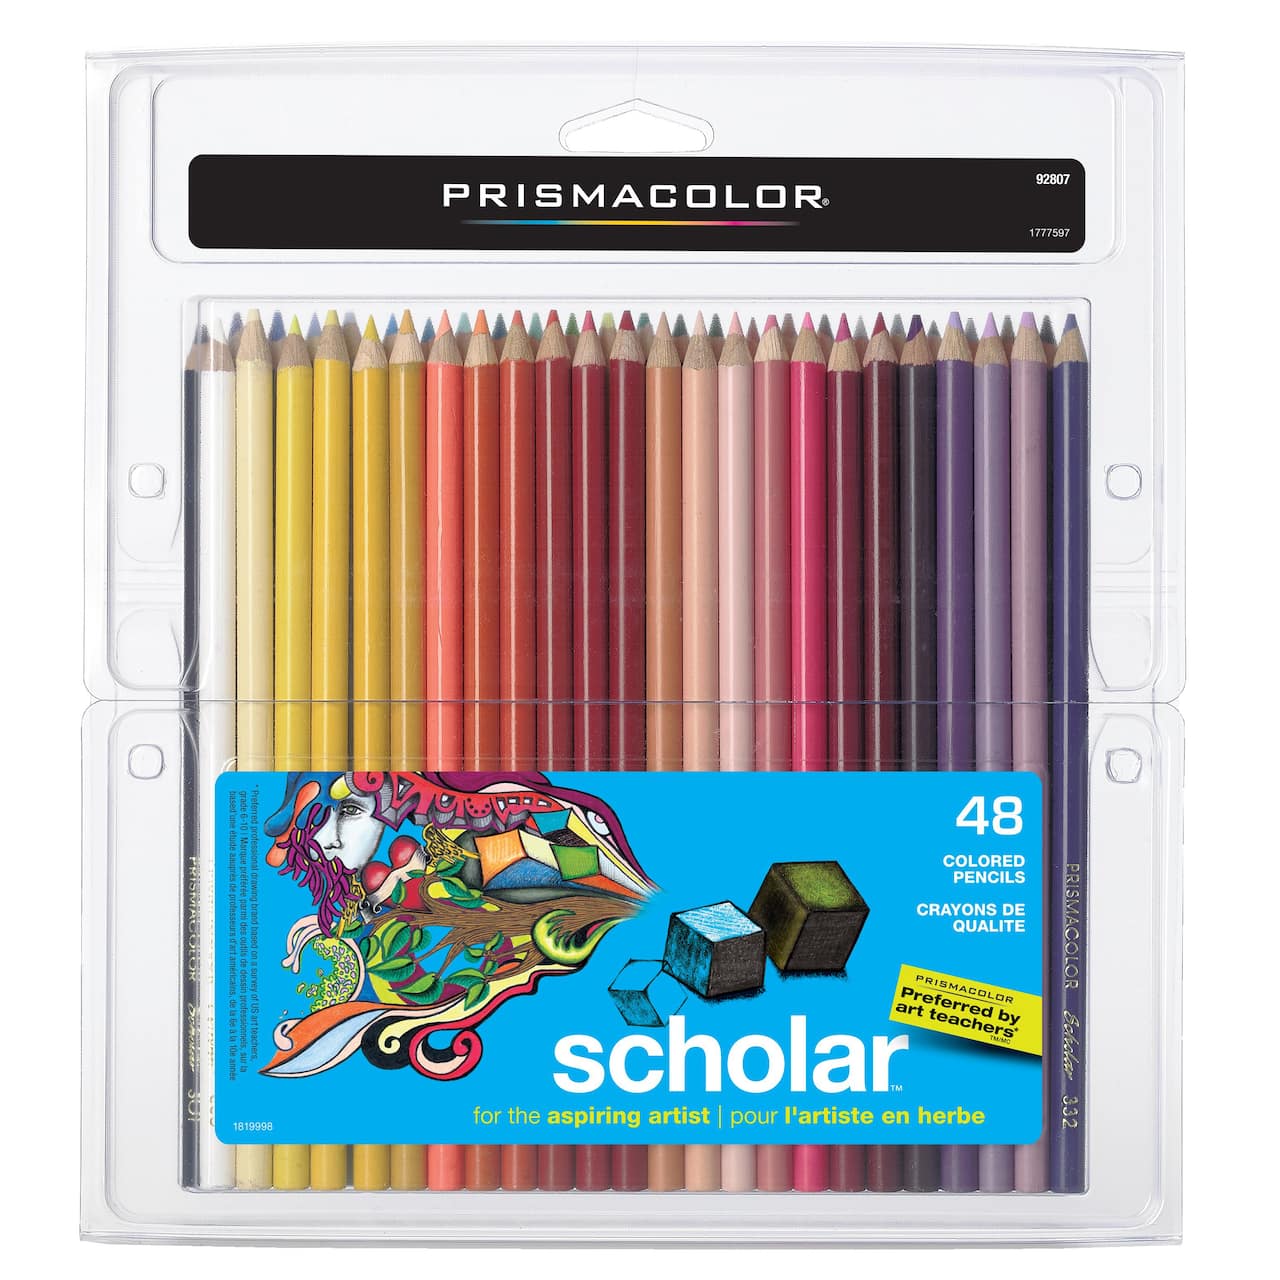 PrismaColor&#xAE; Scholar&#x2122; Colored Pencils